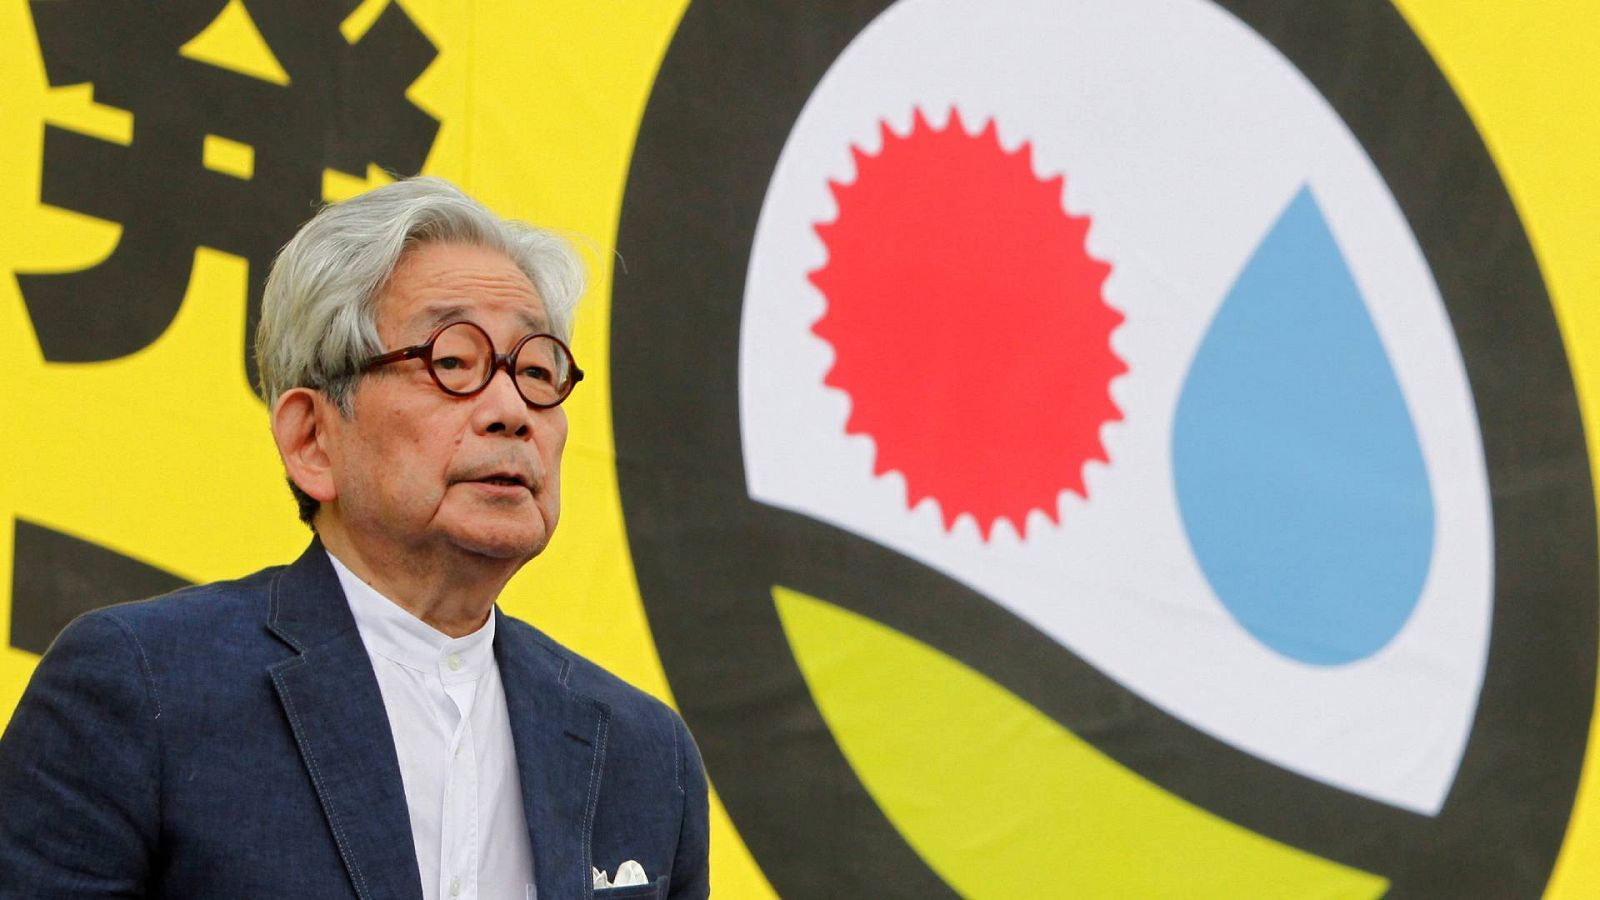 El escritor japonés Kenzaburo Oe en una imagen de archico durante una charla antinuclear en Tokio 2011